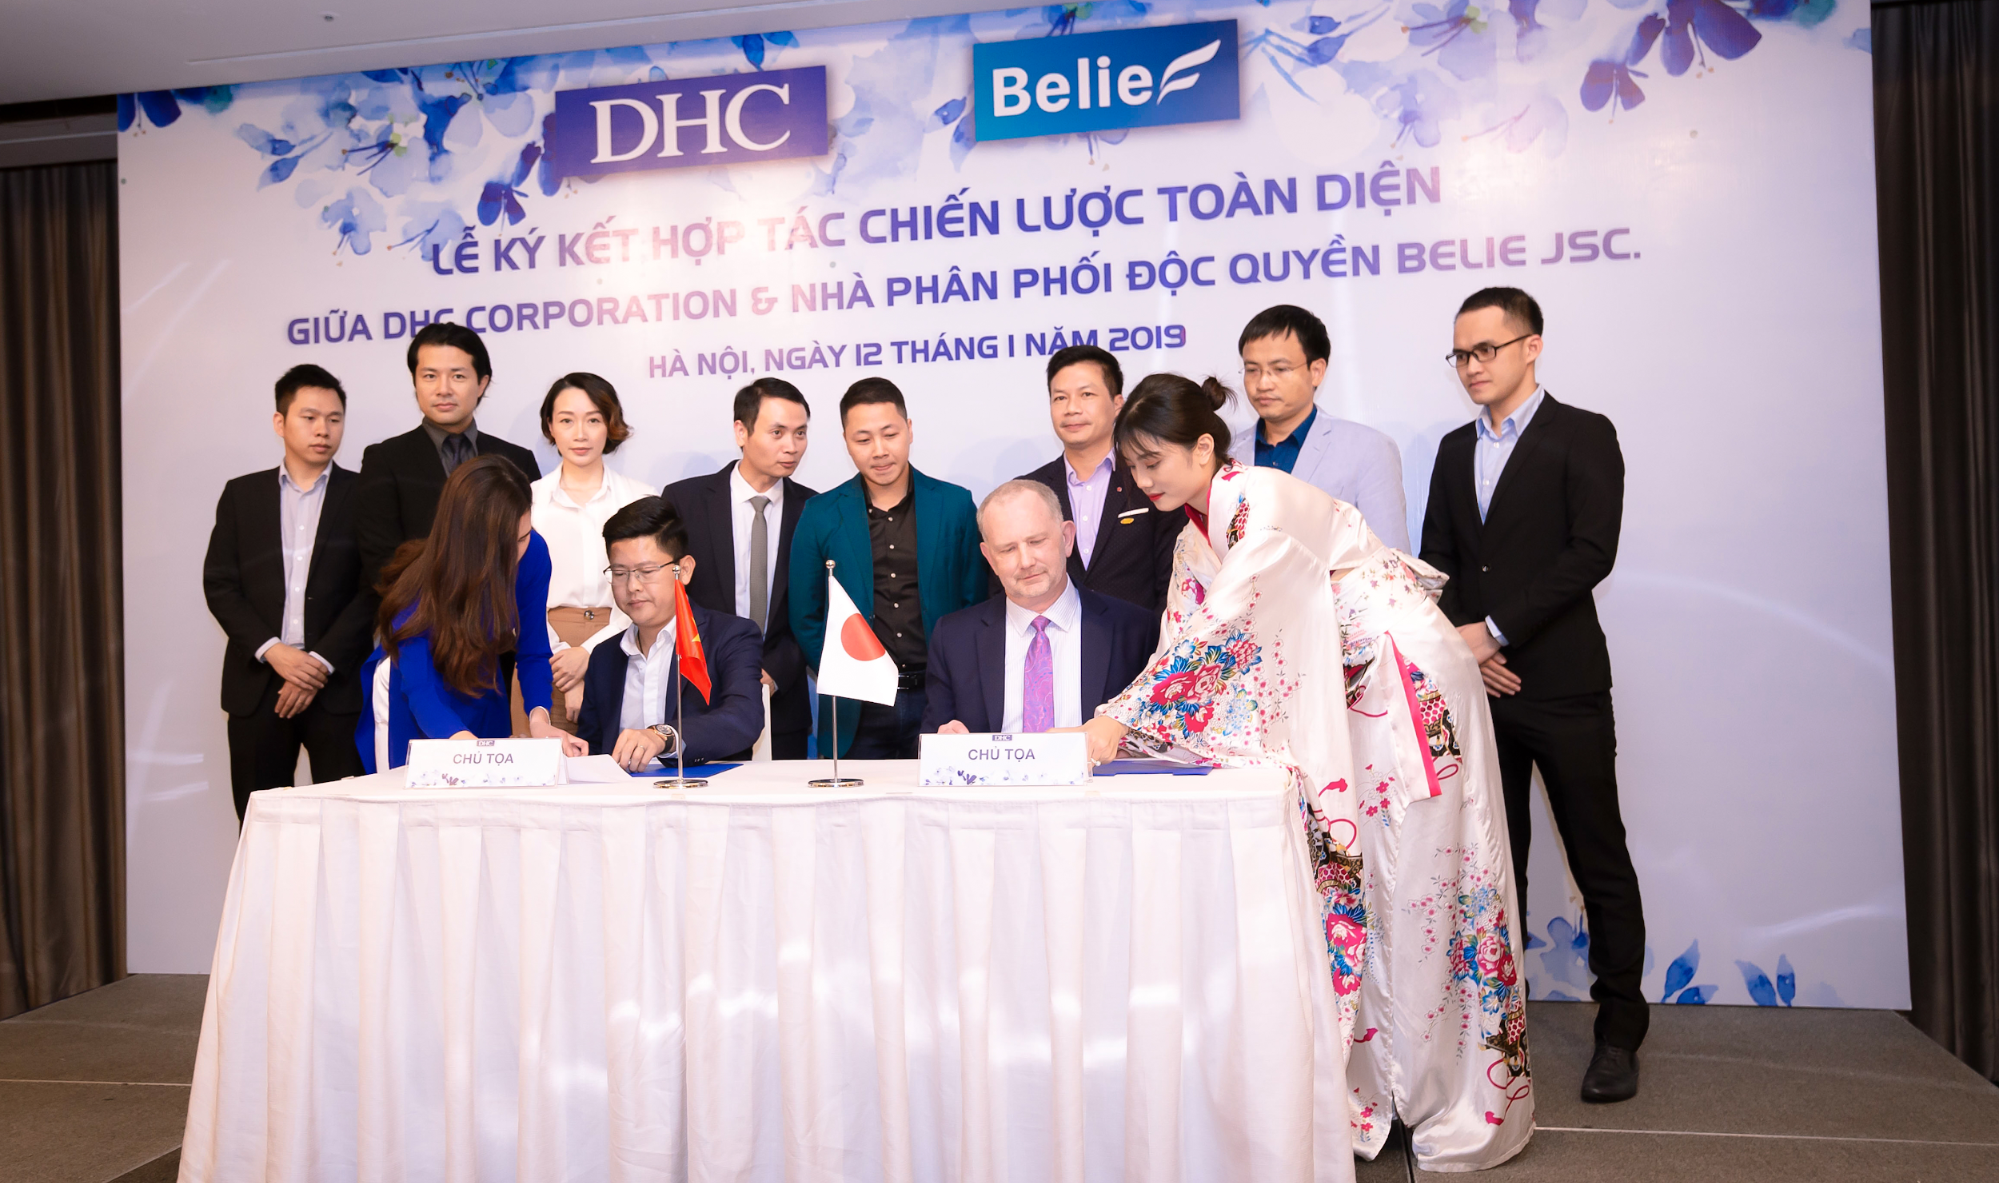 CTCP Belie ký kết chiến lực hợp tác toàn diện với DHC Corp